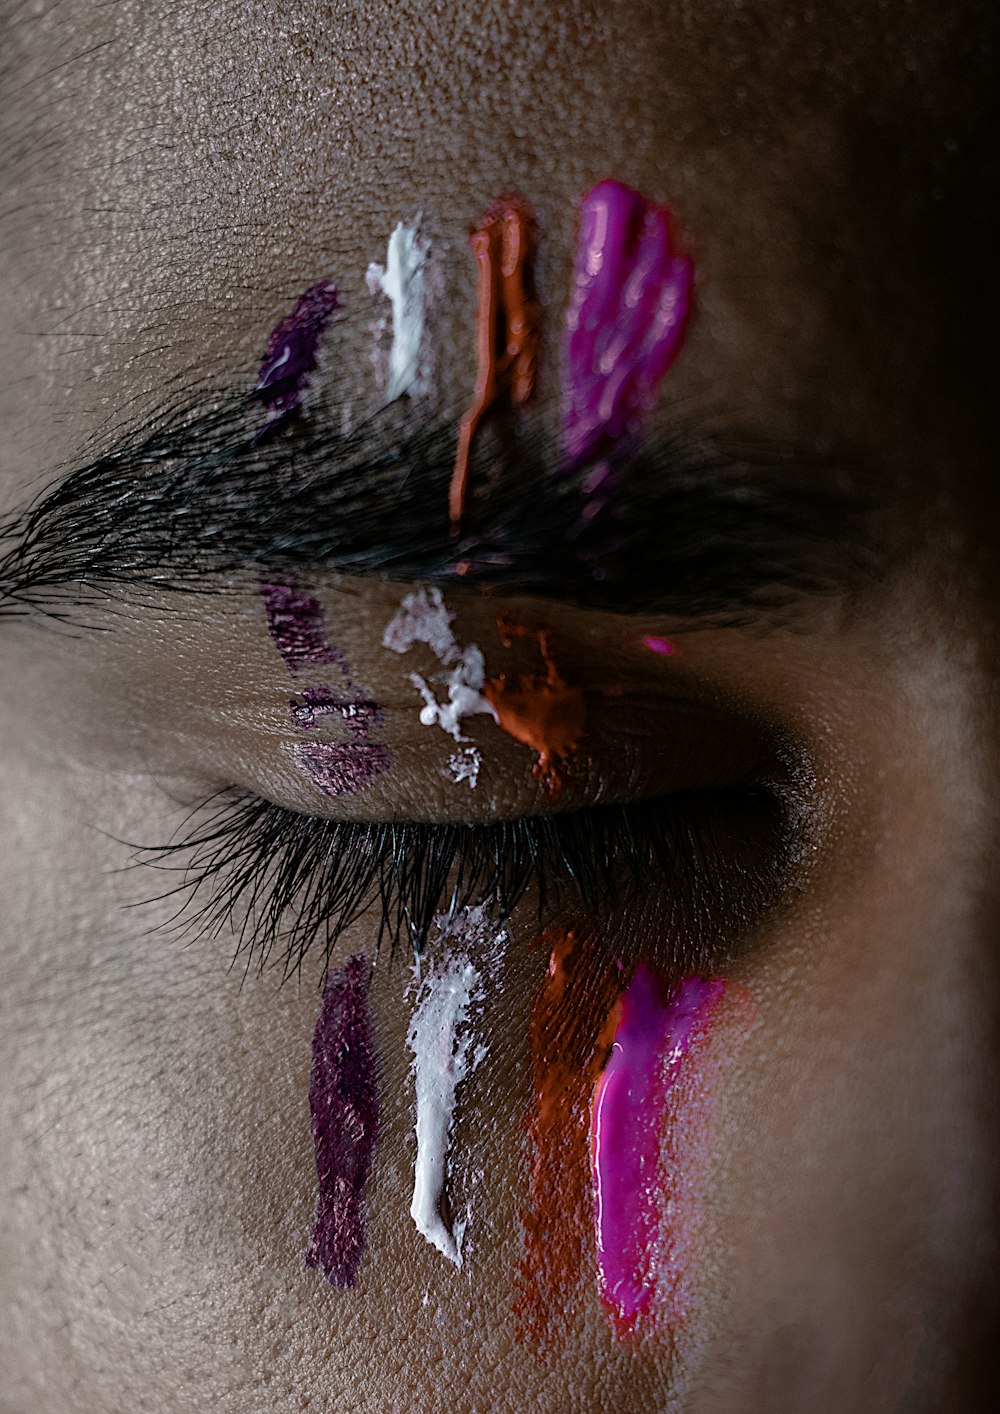 Rosa, rote, weiße und violette Farben auf dem Auge des Mannes